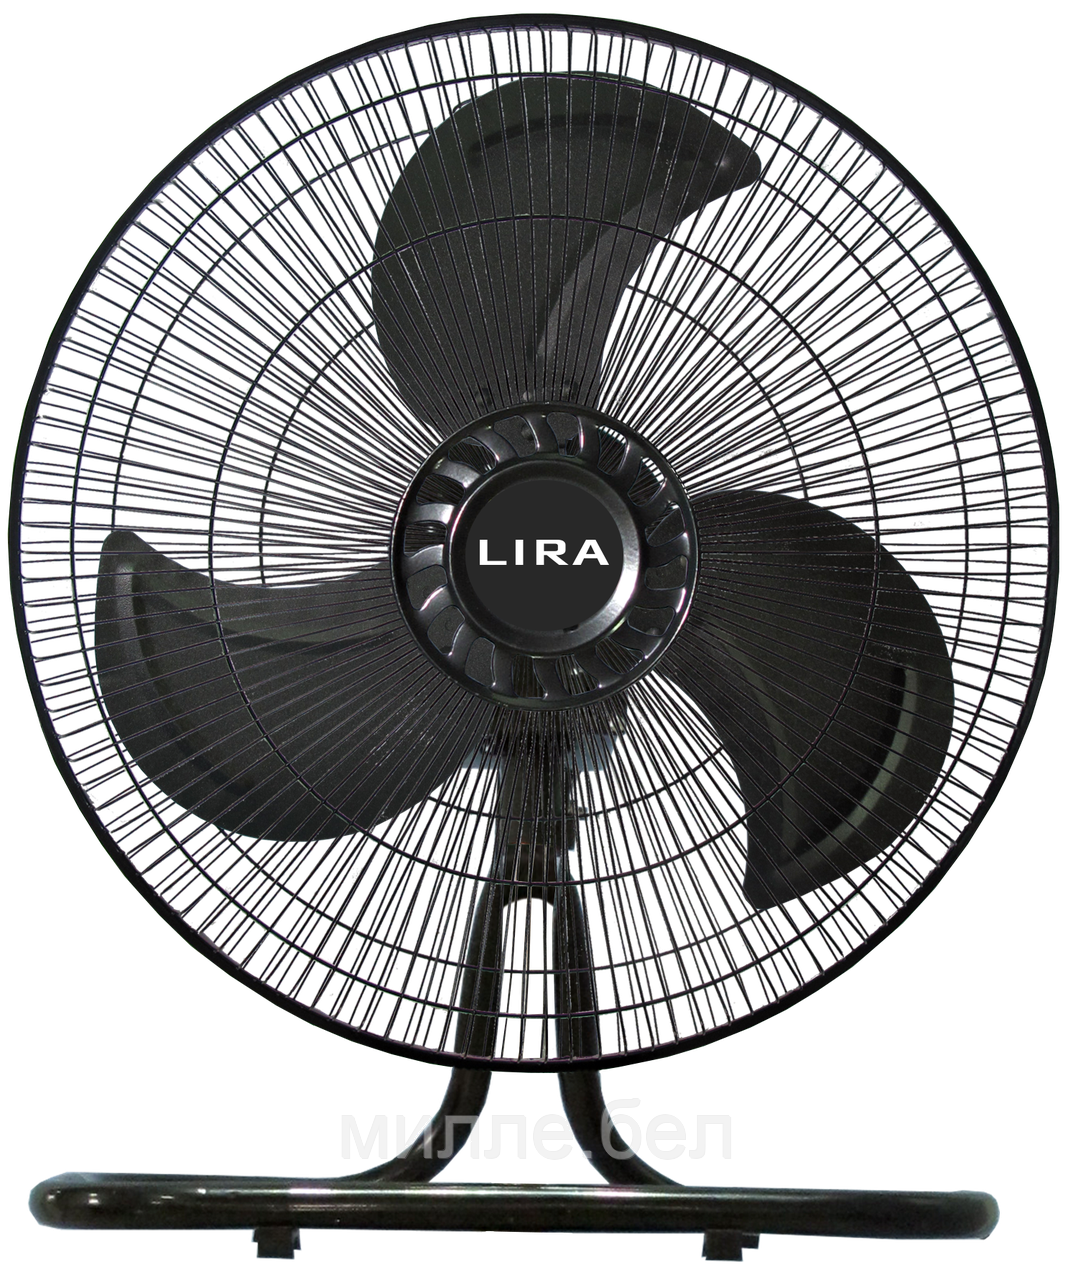 Вентилятор настольный  LIRA LR 1110 (125 Вт) трансформер  3 в 1 (напольный, настенный)